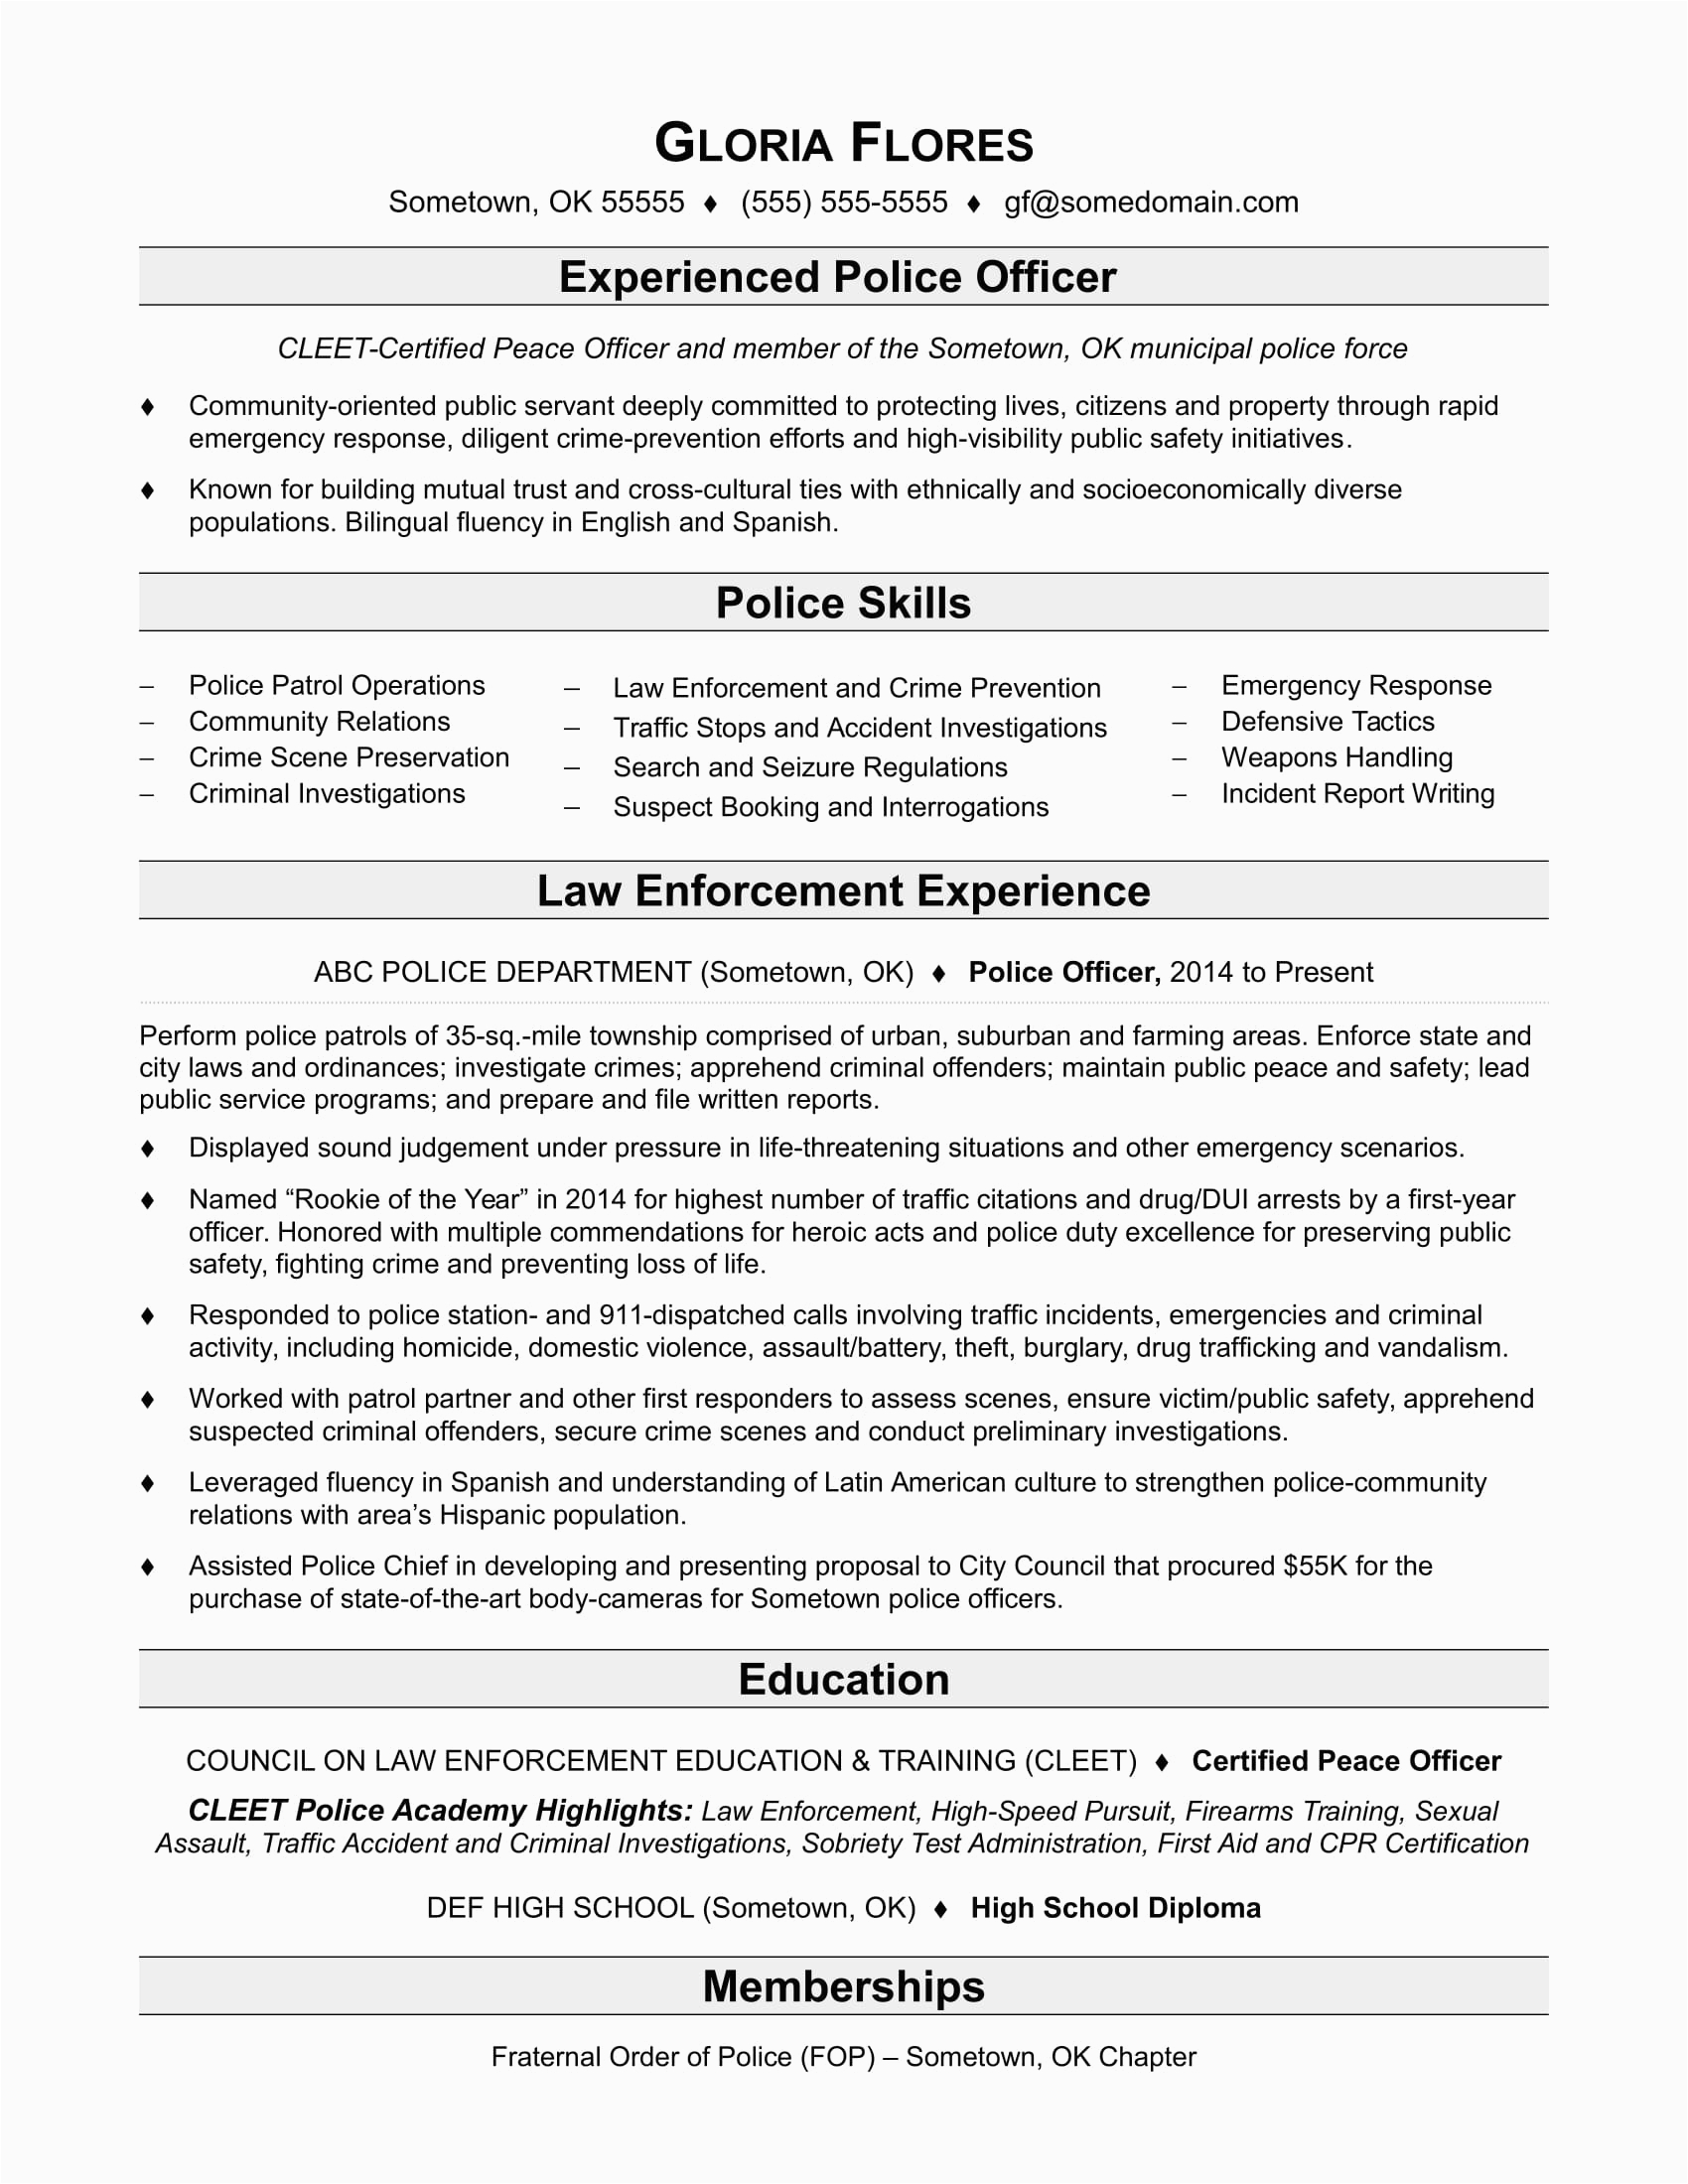 Sample Resume Objectives for Law Enforcement Police Ficer Resume Sample